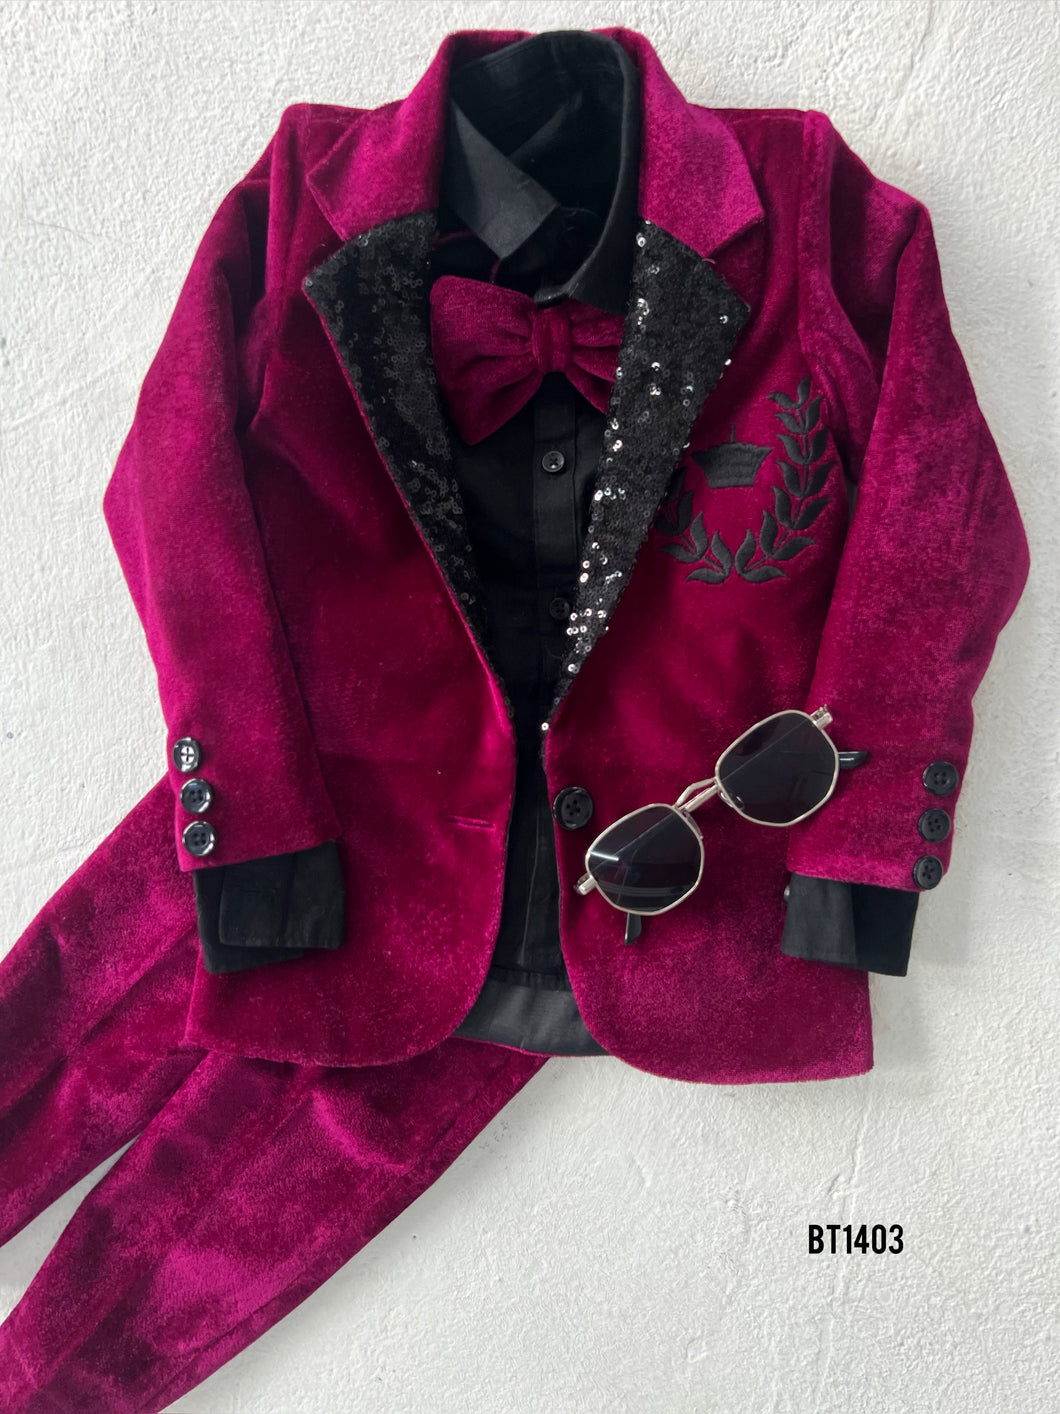 BT1403 Garnet Glamour: Boys' Plush Velvet Suit